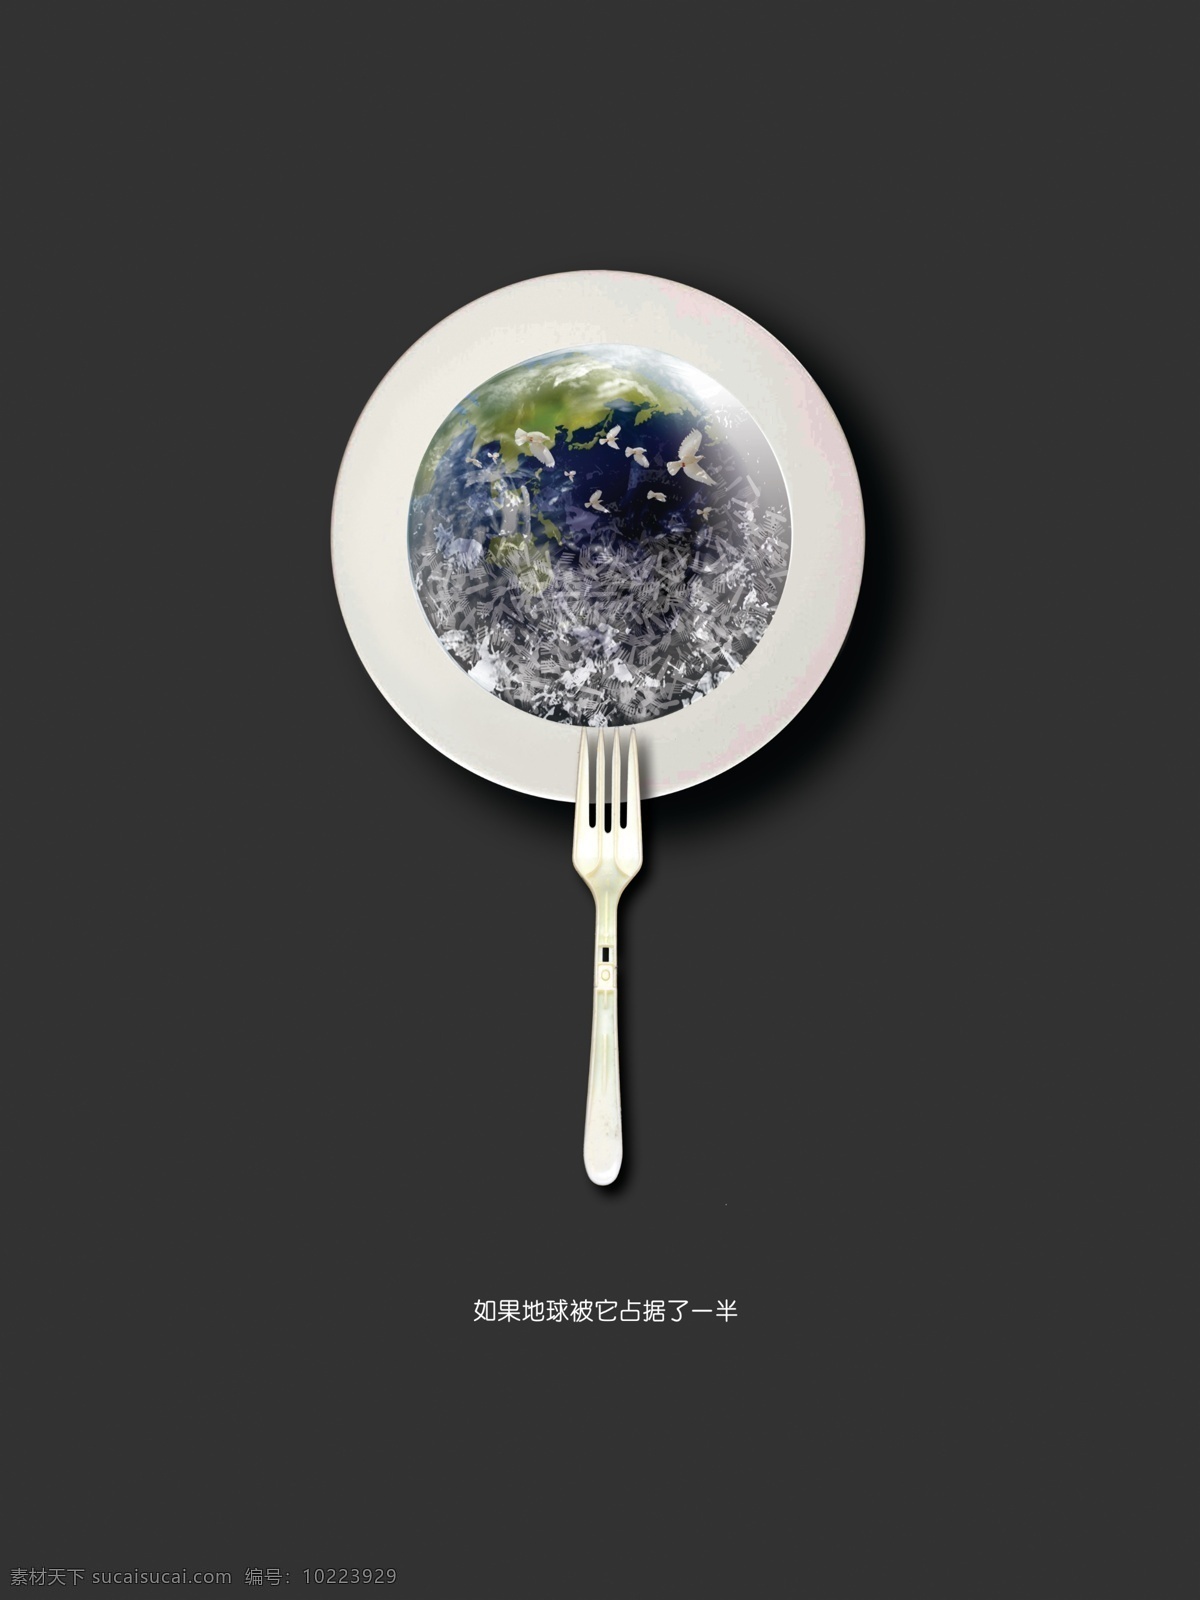 环保招贴 毕业设计 环保 白色污染 一次性餐具 地球 环保海报 公益海报 公益招贴 环境保护 公益 白色垃圾 系列海报 广告设计模板 源文件